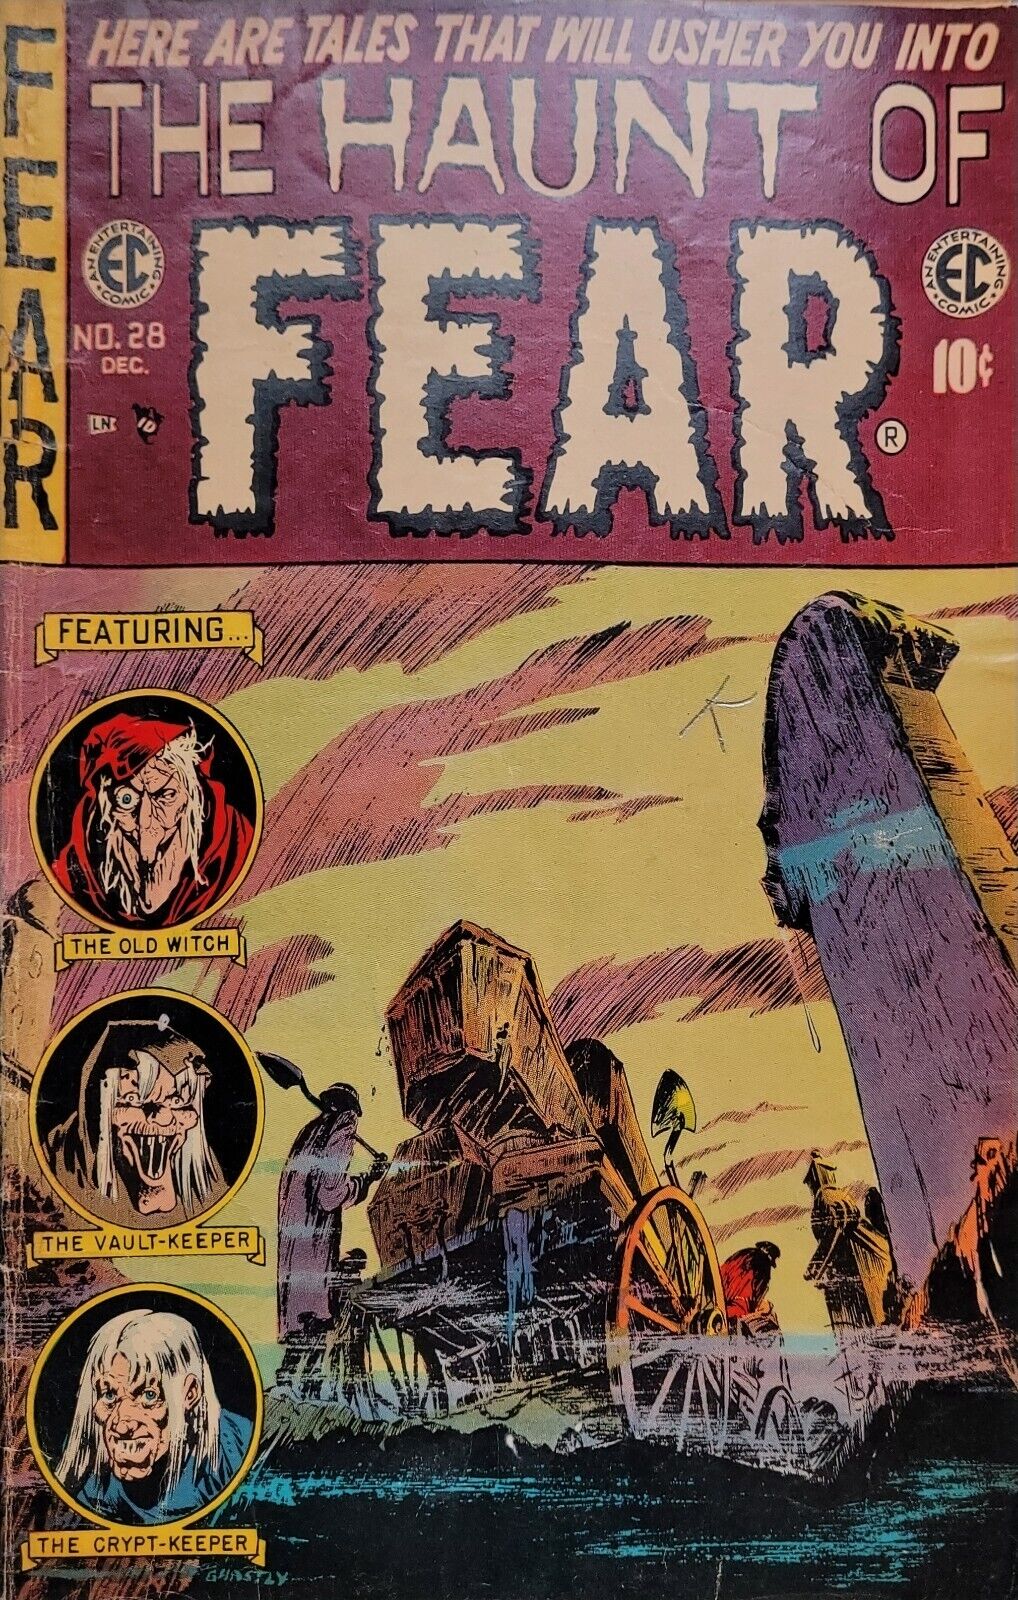 RARE Haunt of Fear #28 1954 Graham Ingels Cover Art  EC Comics VERY GOOD